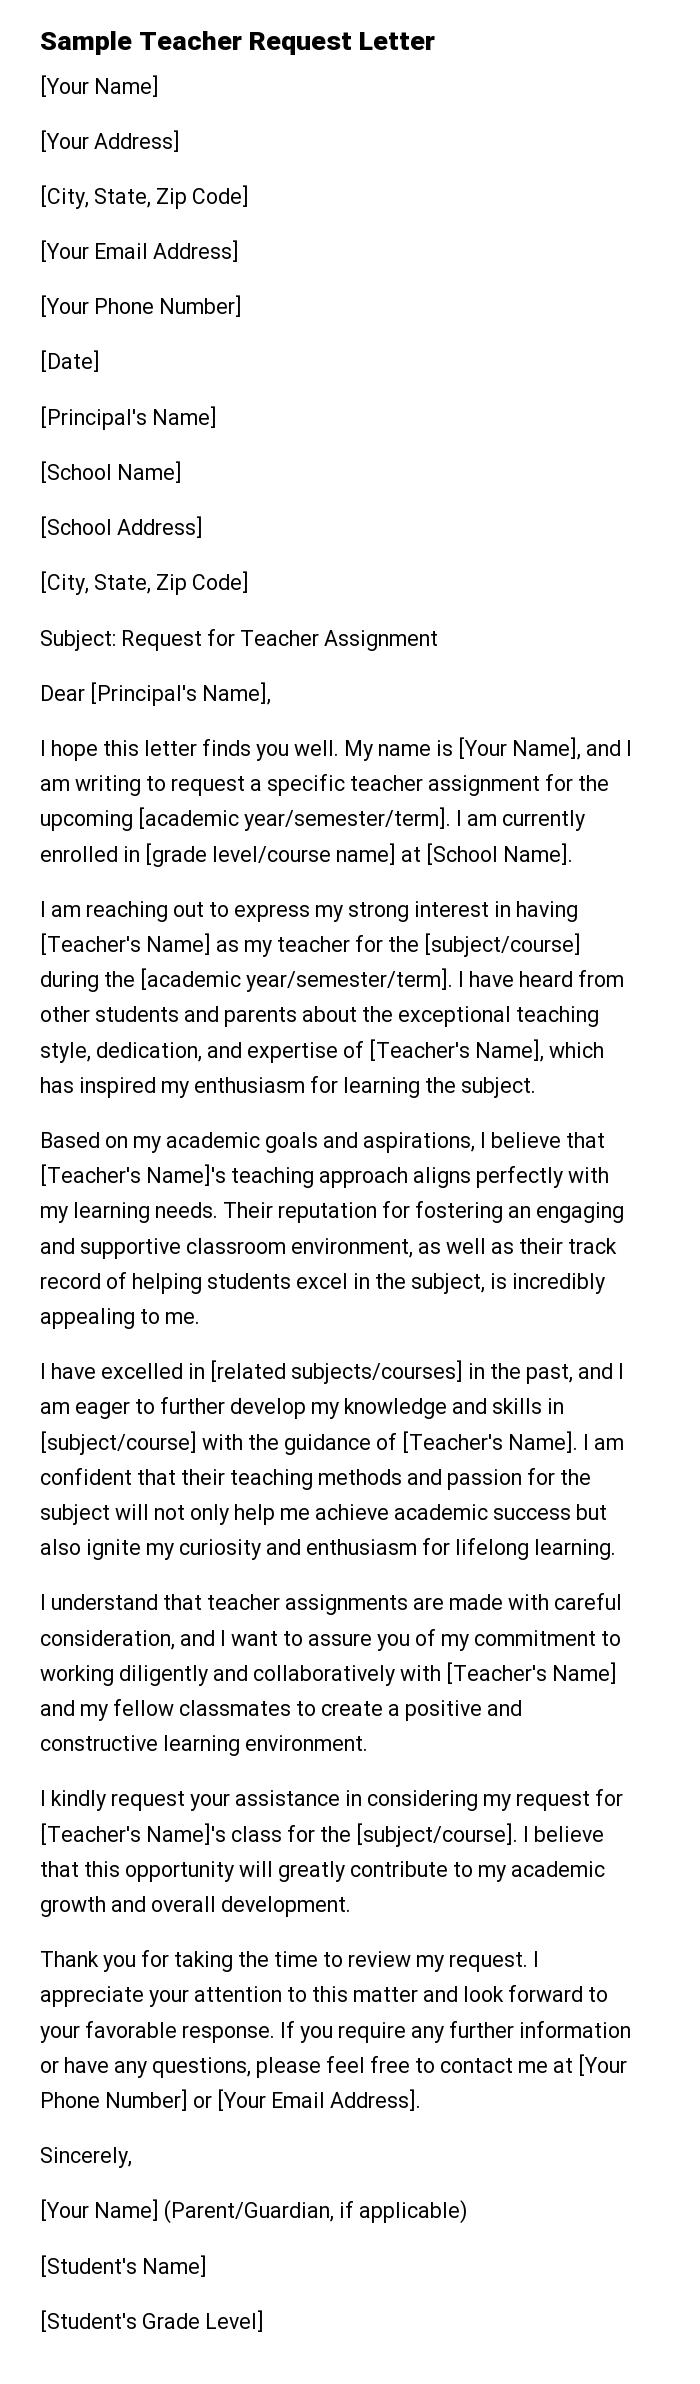 Sample Teacher Request Letter